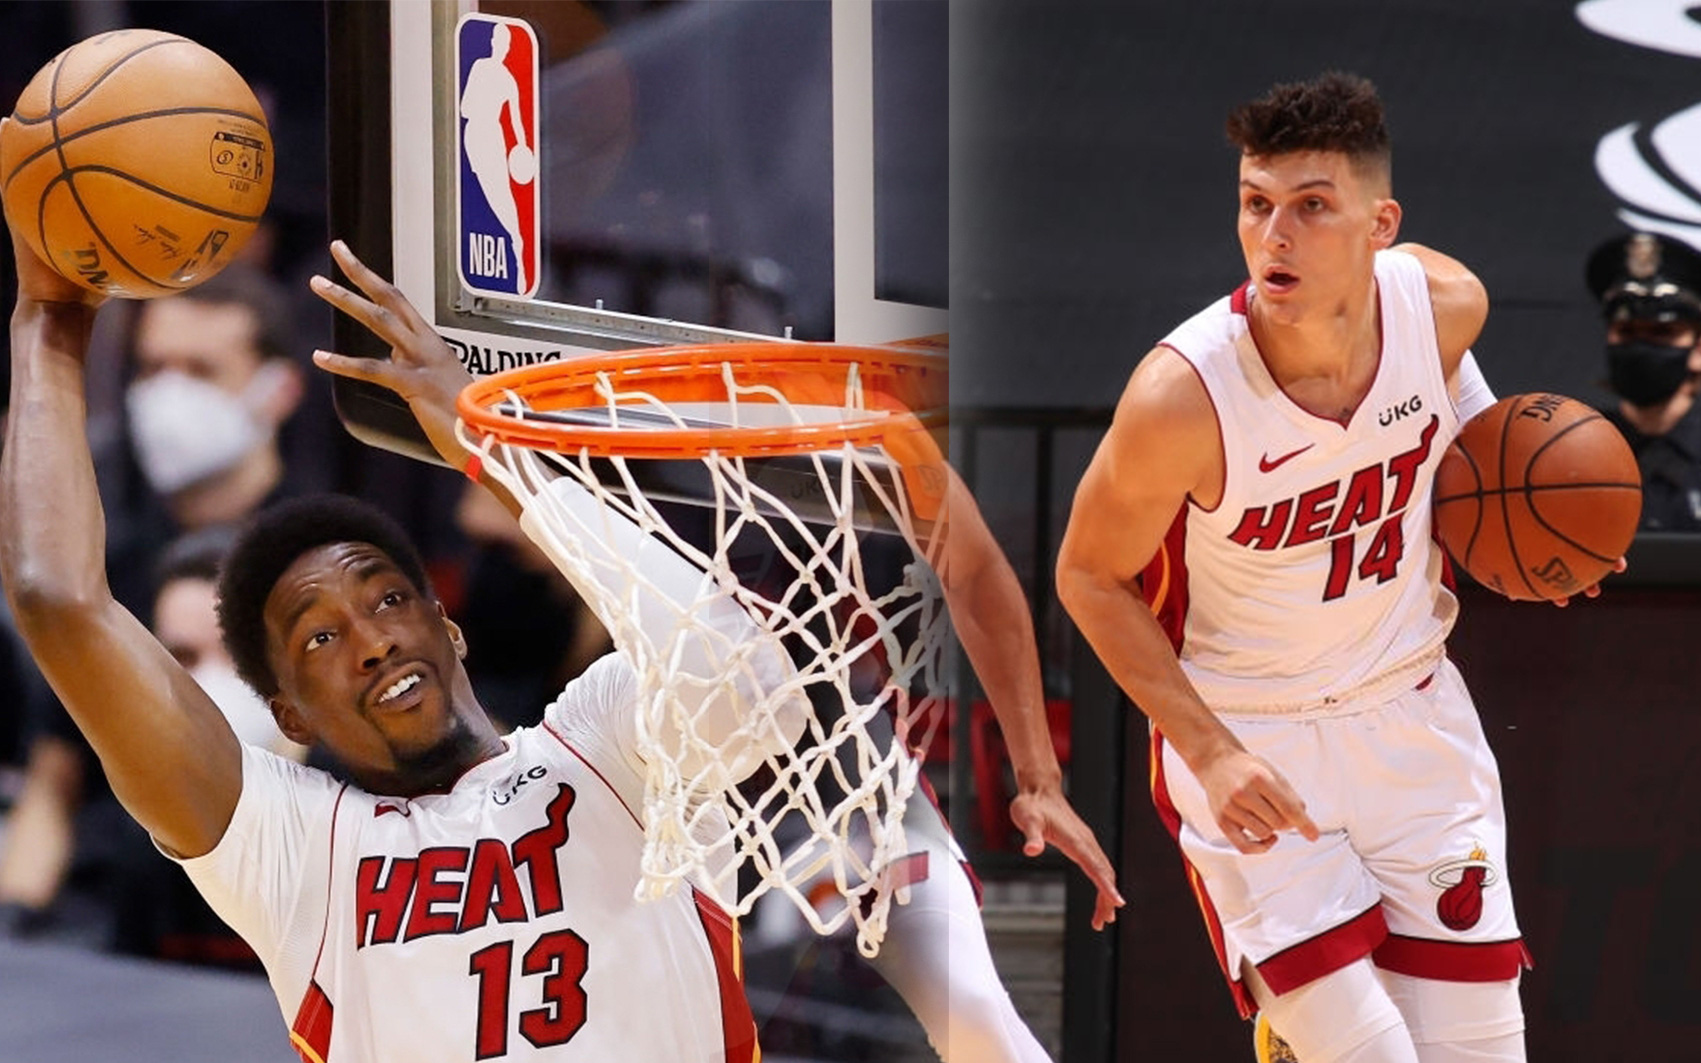 Double double kỳ lạ của Tyler Herro và Bam Adebayo giúp Miami Heat thắng trận đấu cuối cùng của 2020